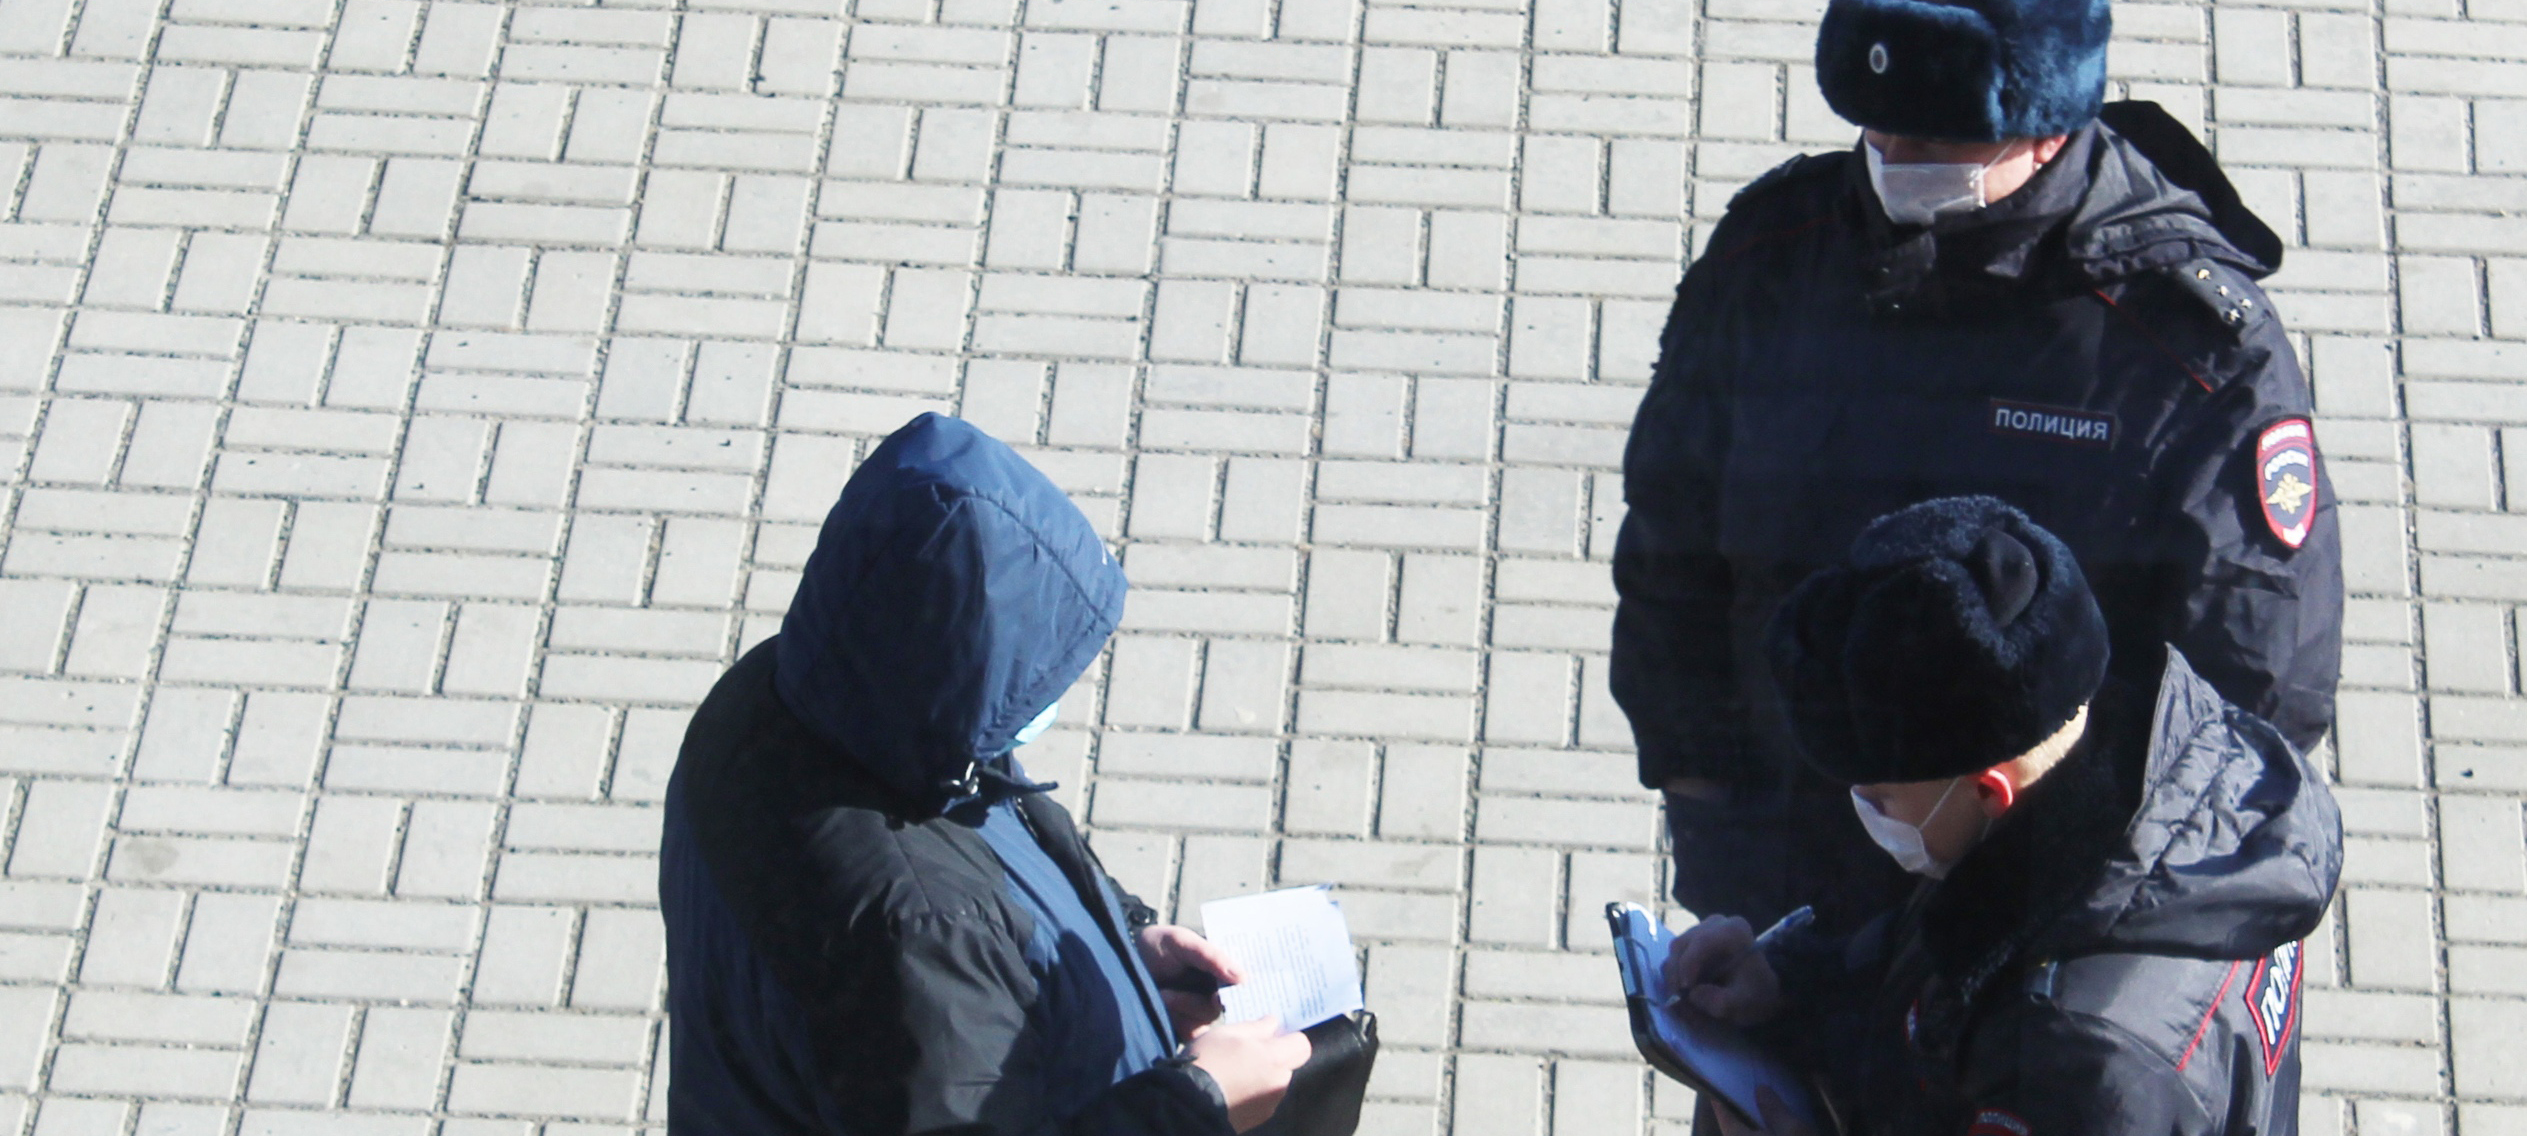 Двое граждан, прибывших в Петрозаводск из других регионов, нарушили режим самоизоляции